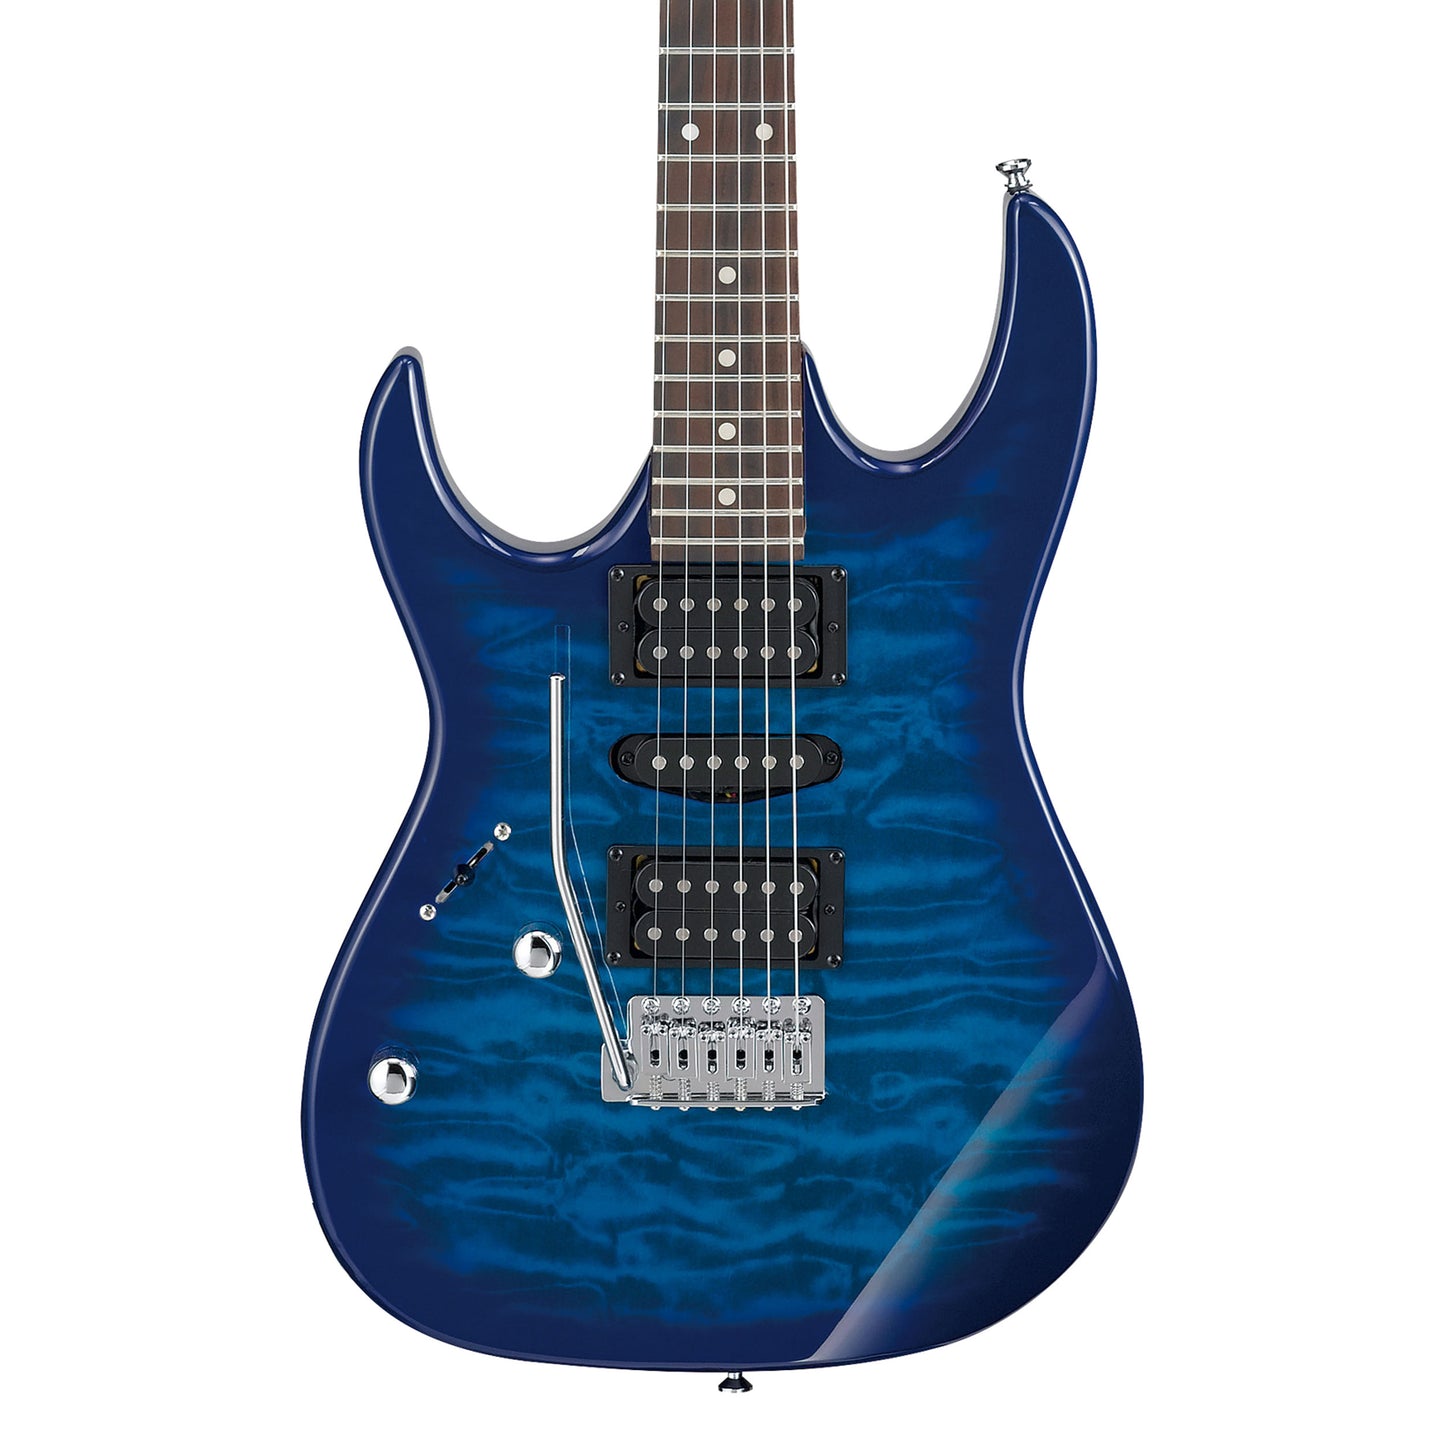 Ibanez GRX70QAL Left Handed 6-String Electric Guitar - Transparent Blue Burst